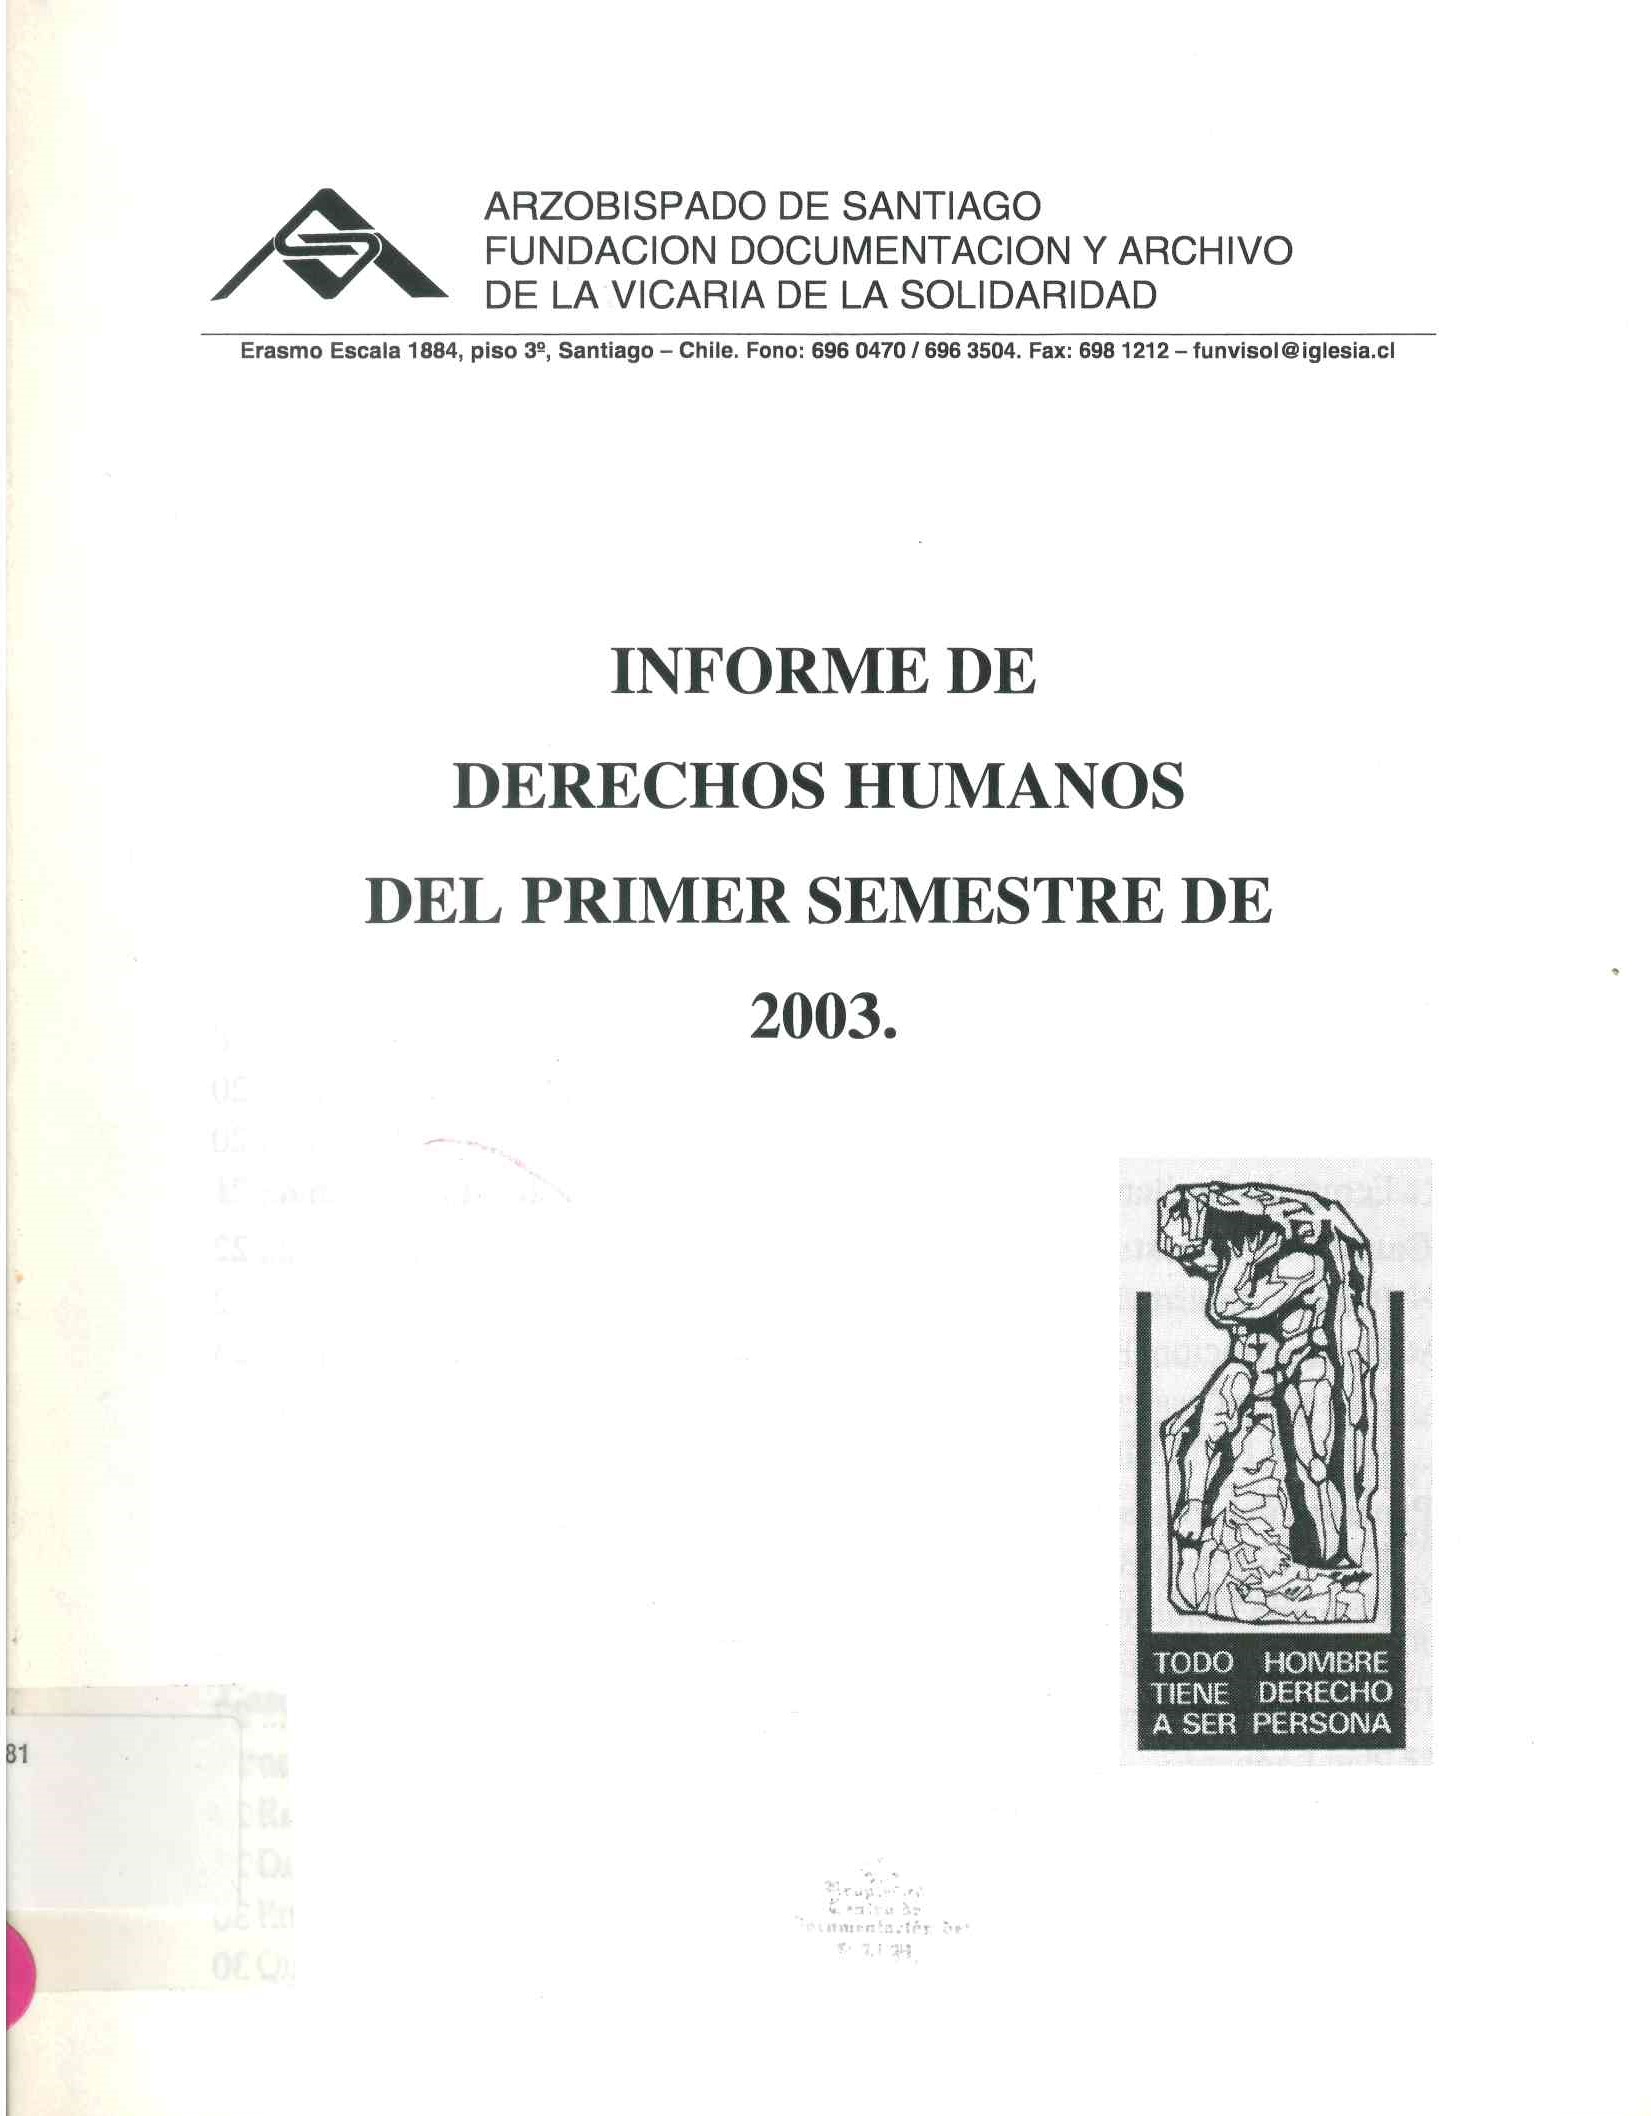 Informe de derechos humanos del primer semestre 2003